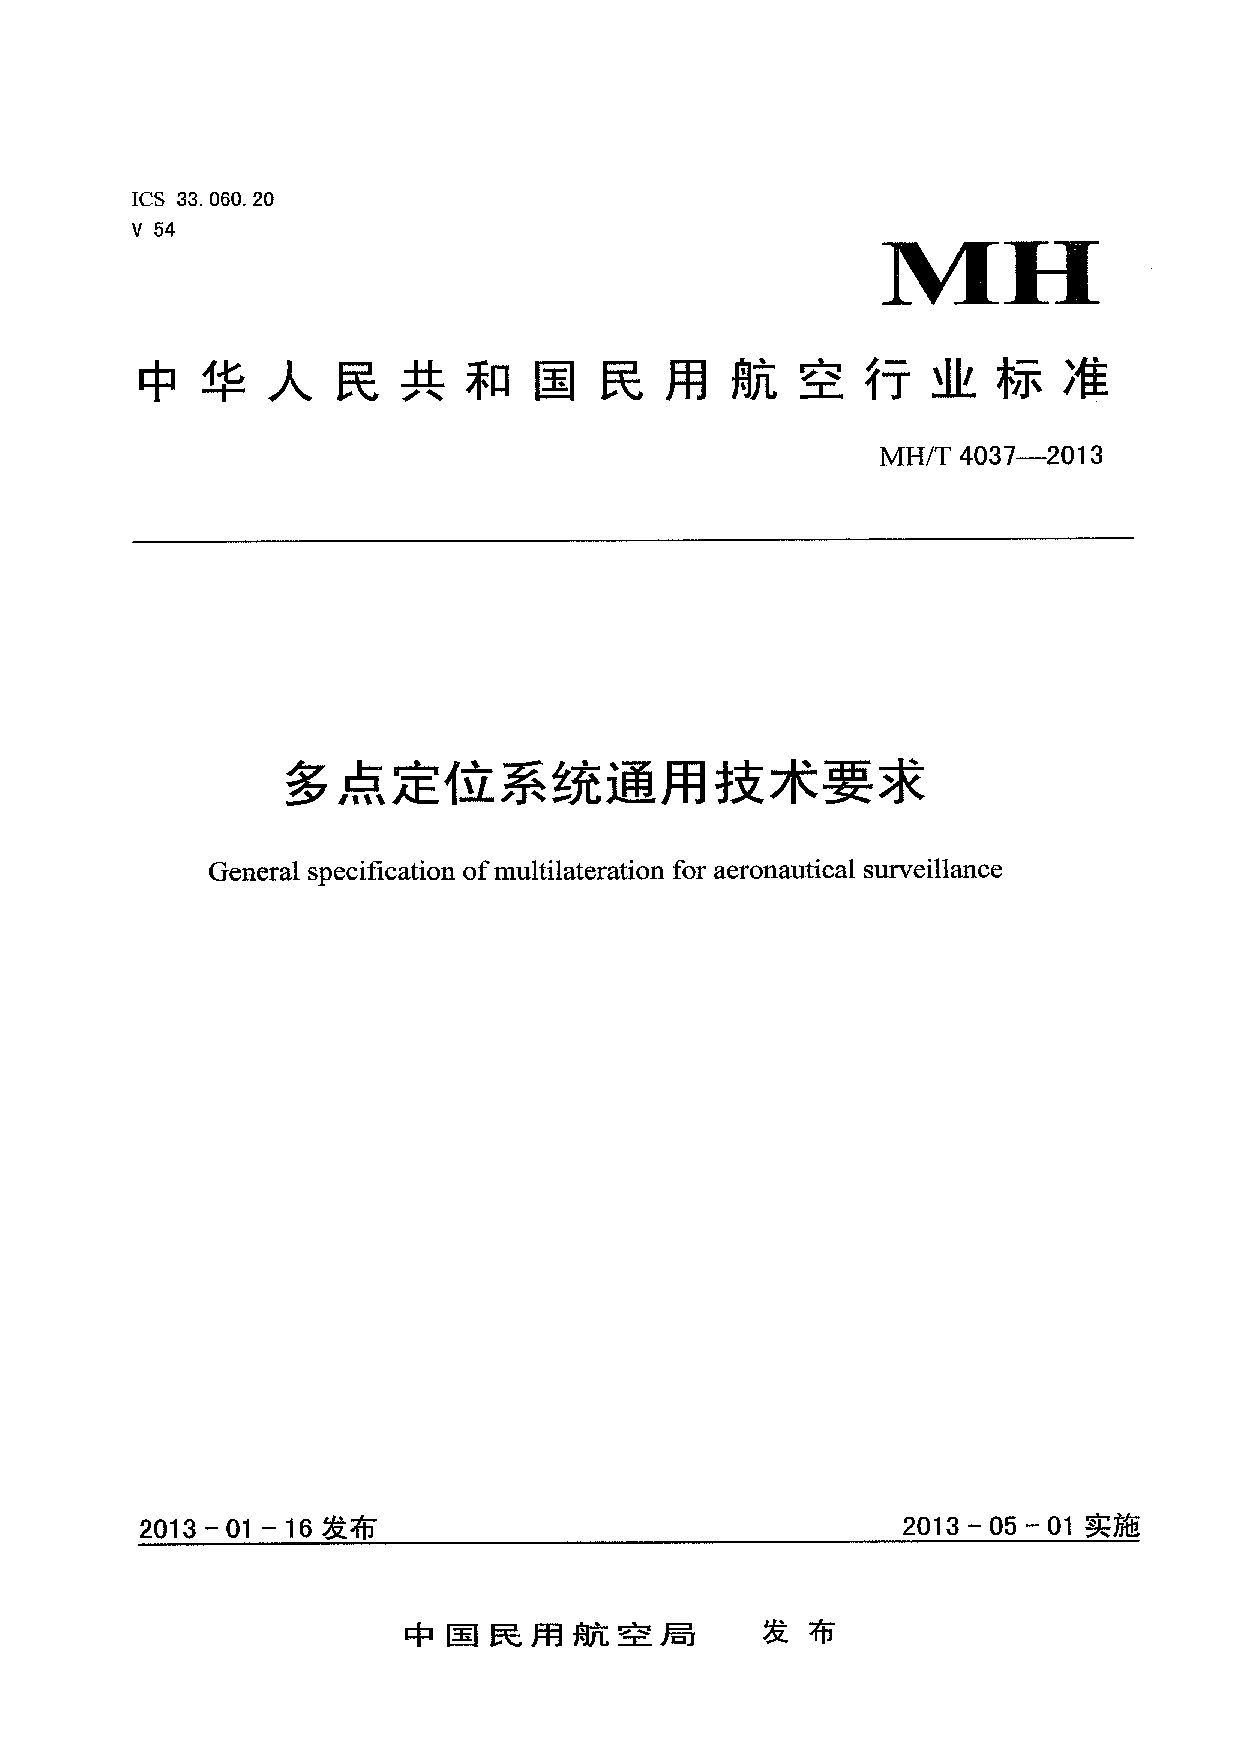 MH/T 4037-2013封面图